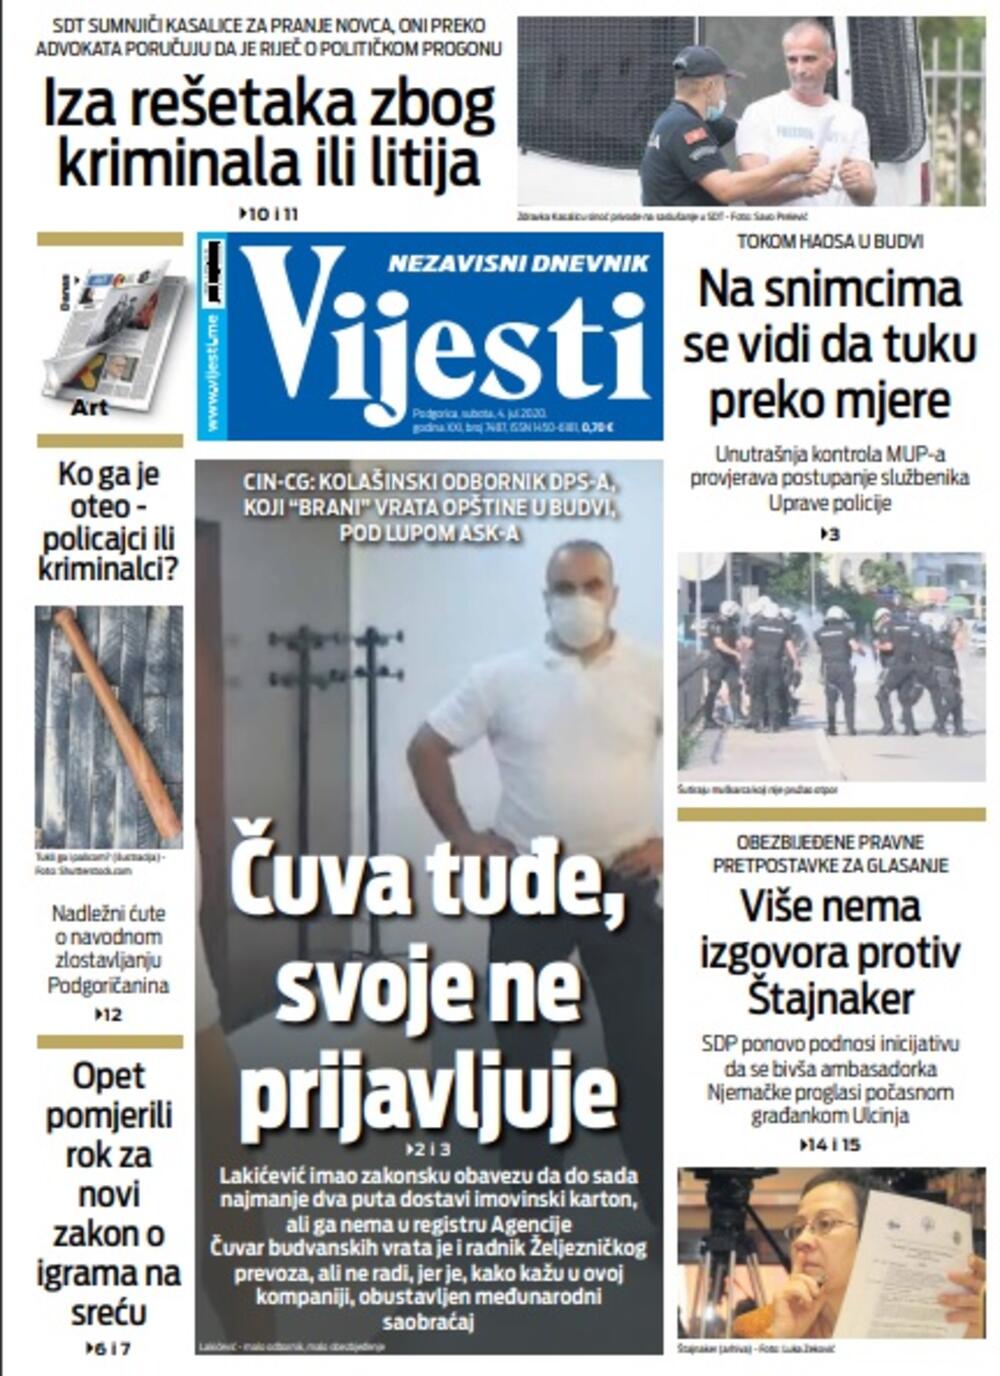 Naslovna strana "Vijesti" za subotu 4. jul 2020. godine, Foto: Vijesti